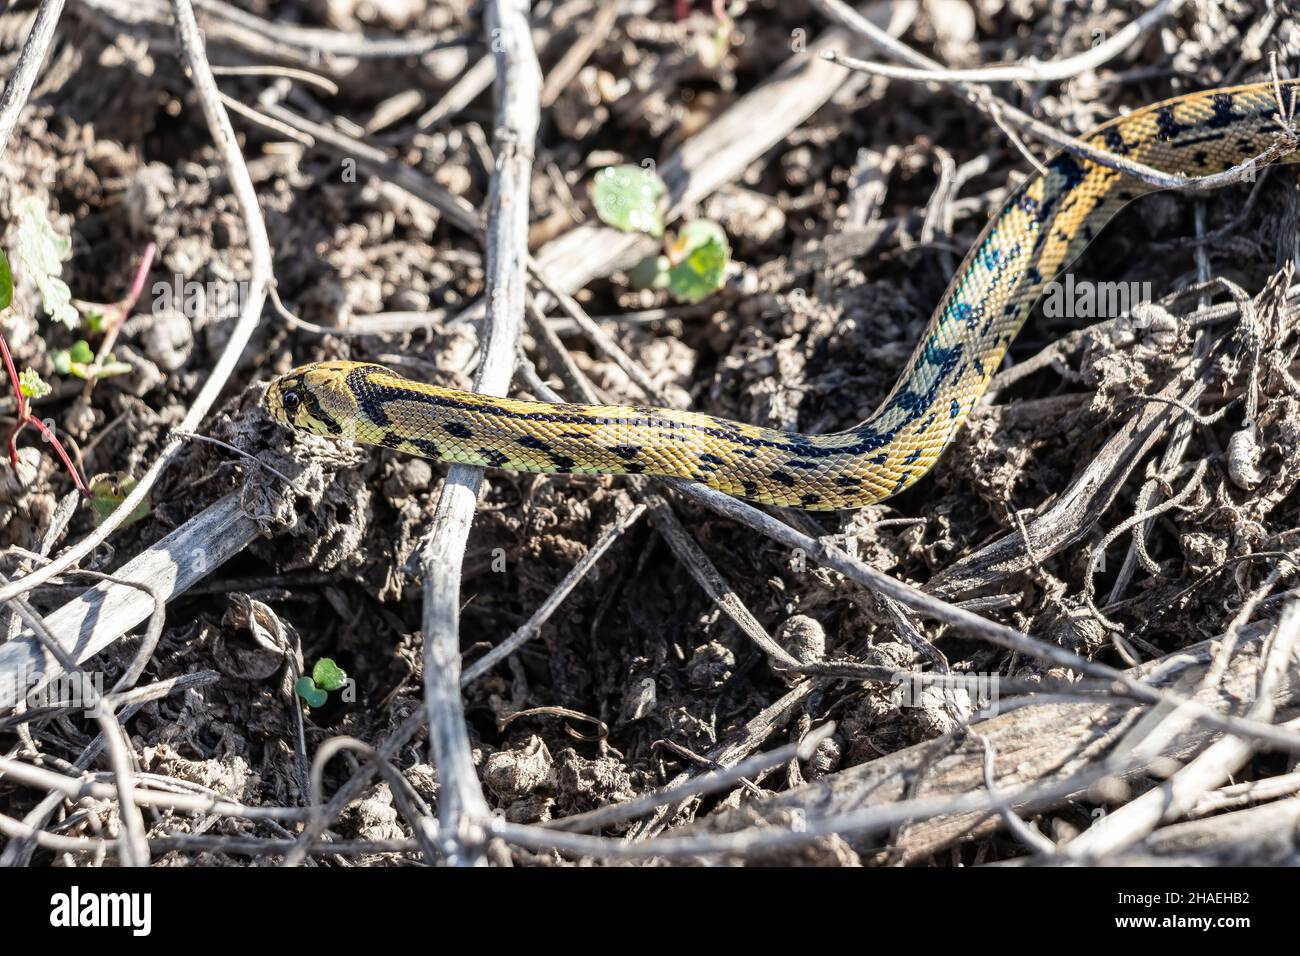 Serpiente de látigo verde o serpiente de látigo occidental (Hierophis viridiflavus), especie de serpiente de la familia Colubridae en su hábitat Foto de stock